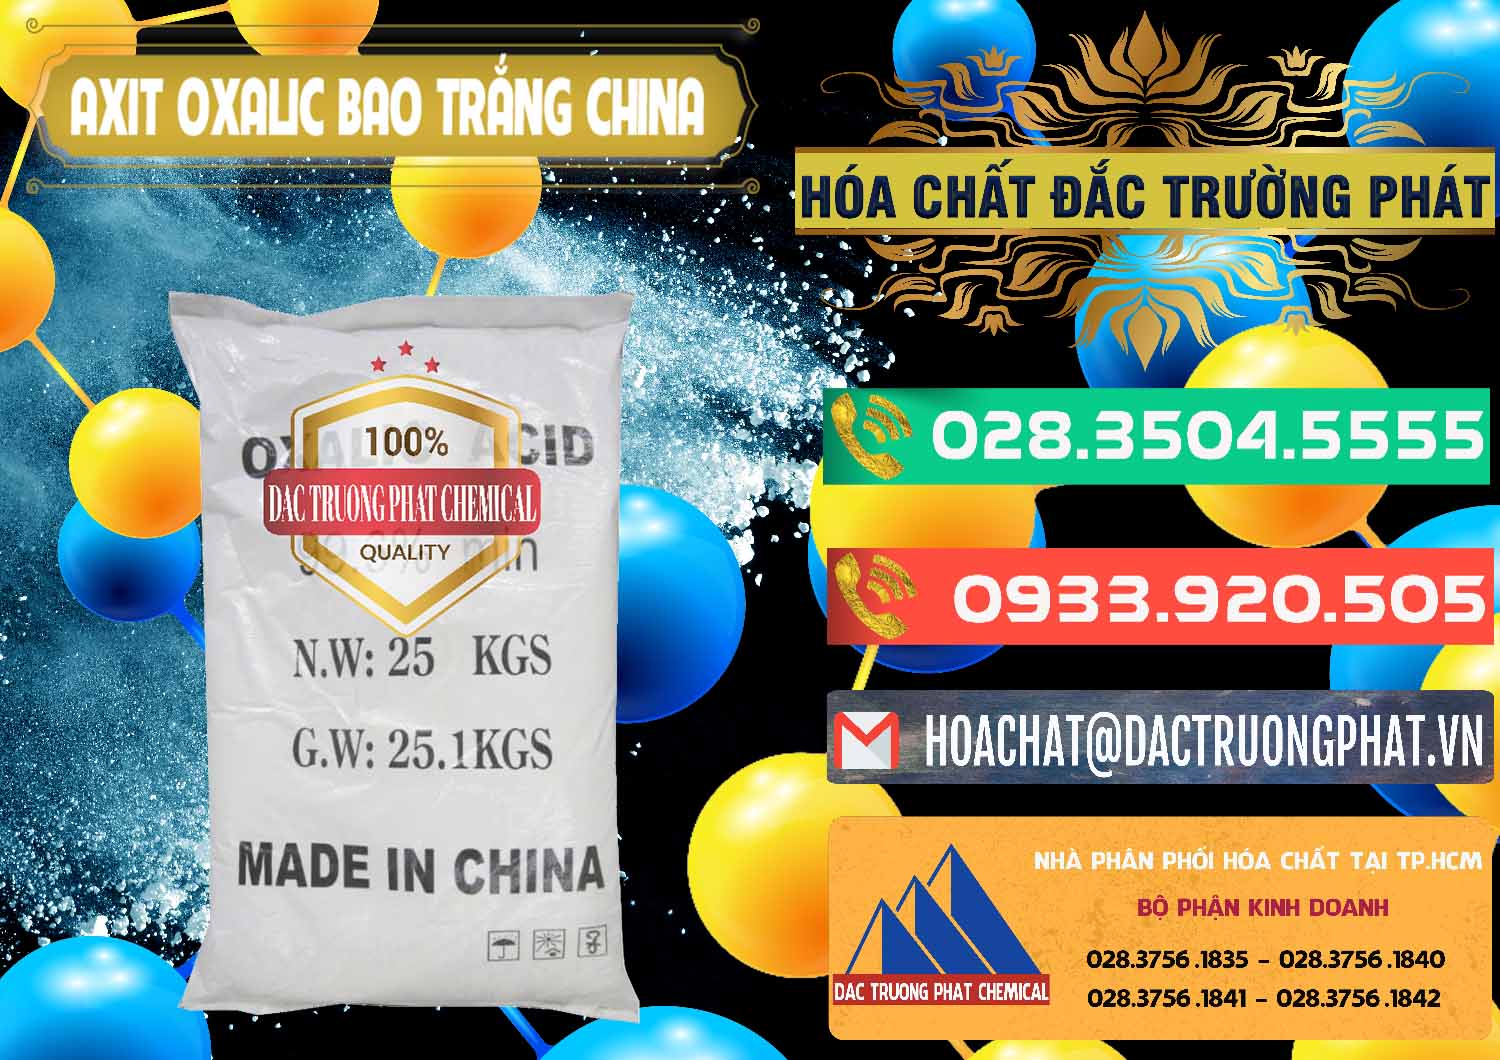 Công ty bán - phân phối Acid Oxalic – Axit Oxalic 99.6% Bao Trắng Trung Quốc China - 0270 - Cty chuyên nhập khẩu _ cung cấp hóa chất tại TP.HCM - congtyhoachat.com.vn